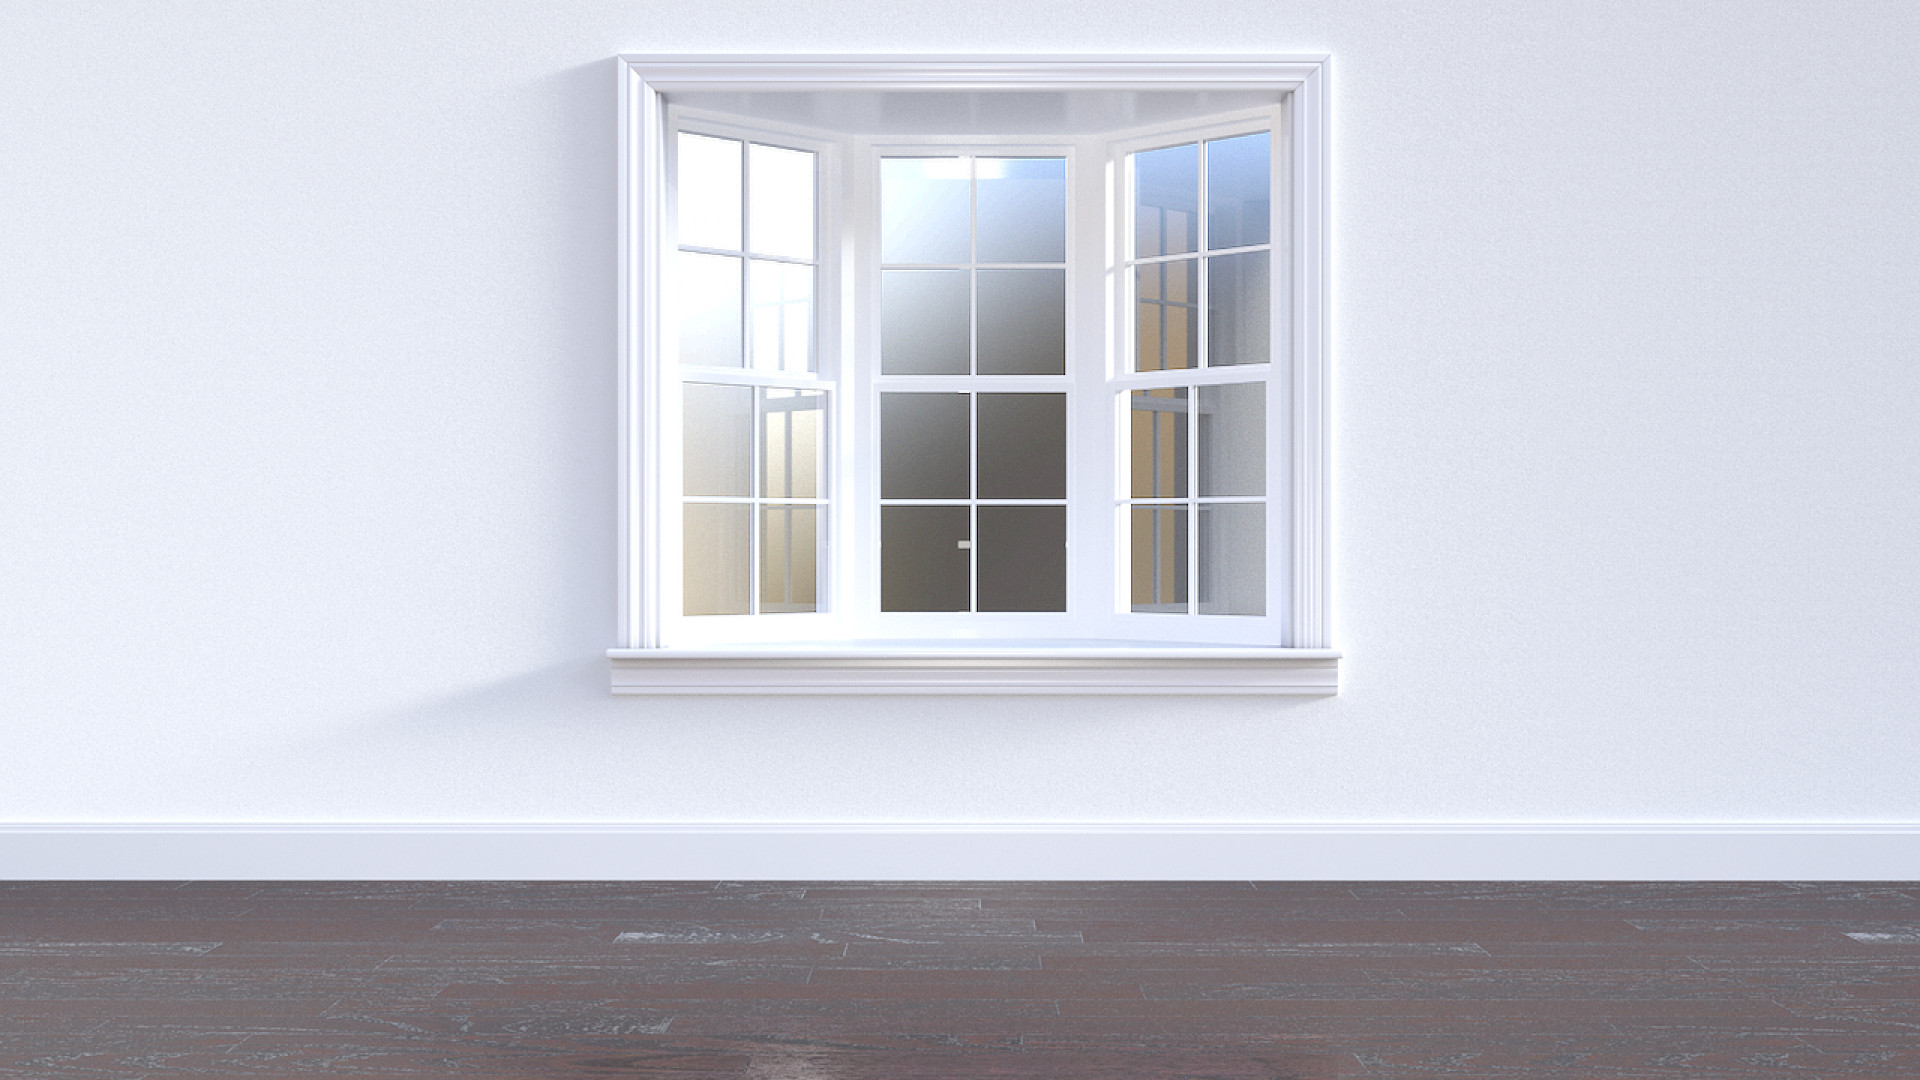 Les fenêtres : un choix crucial pour votre confort